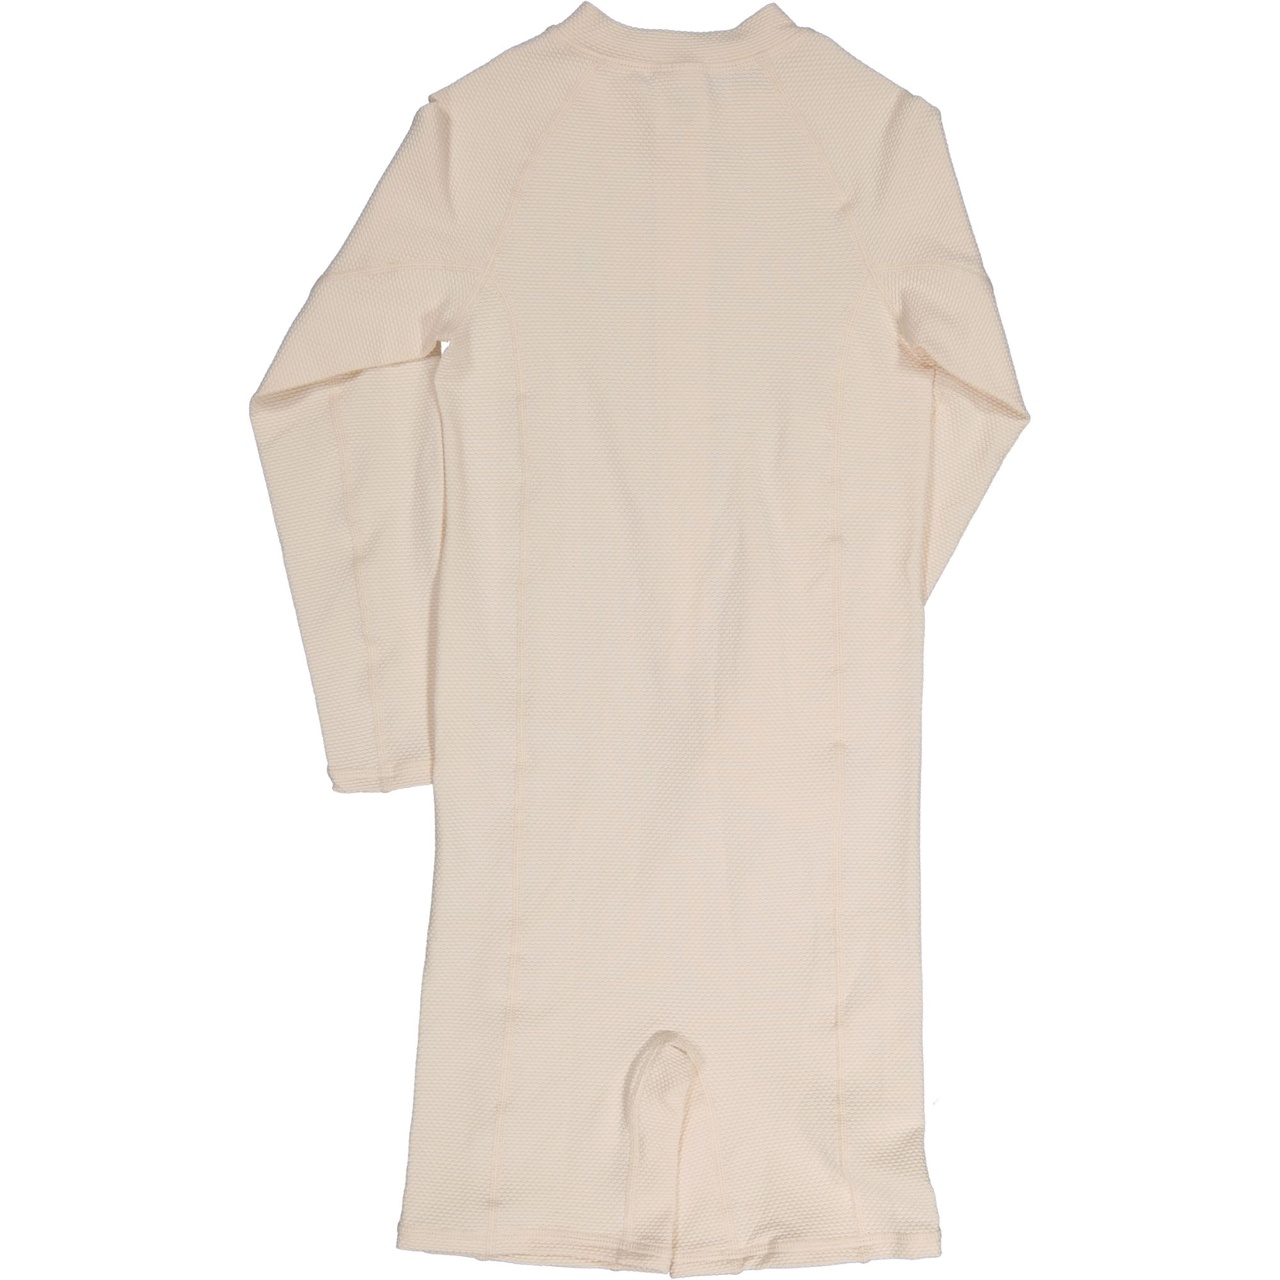 UV-Suit L.S Soft beige  110/116